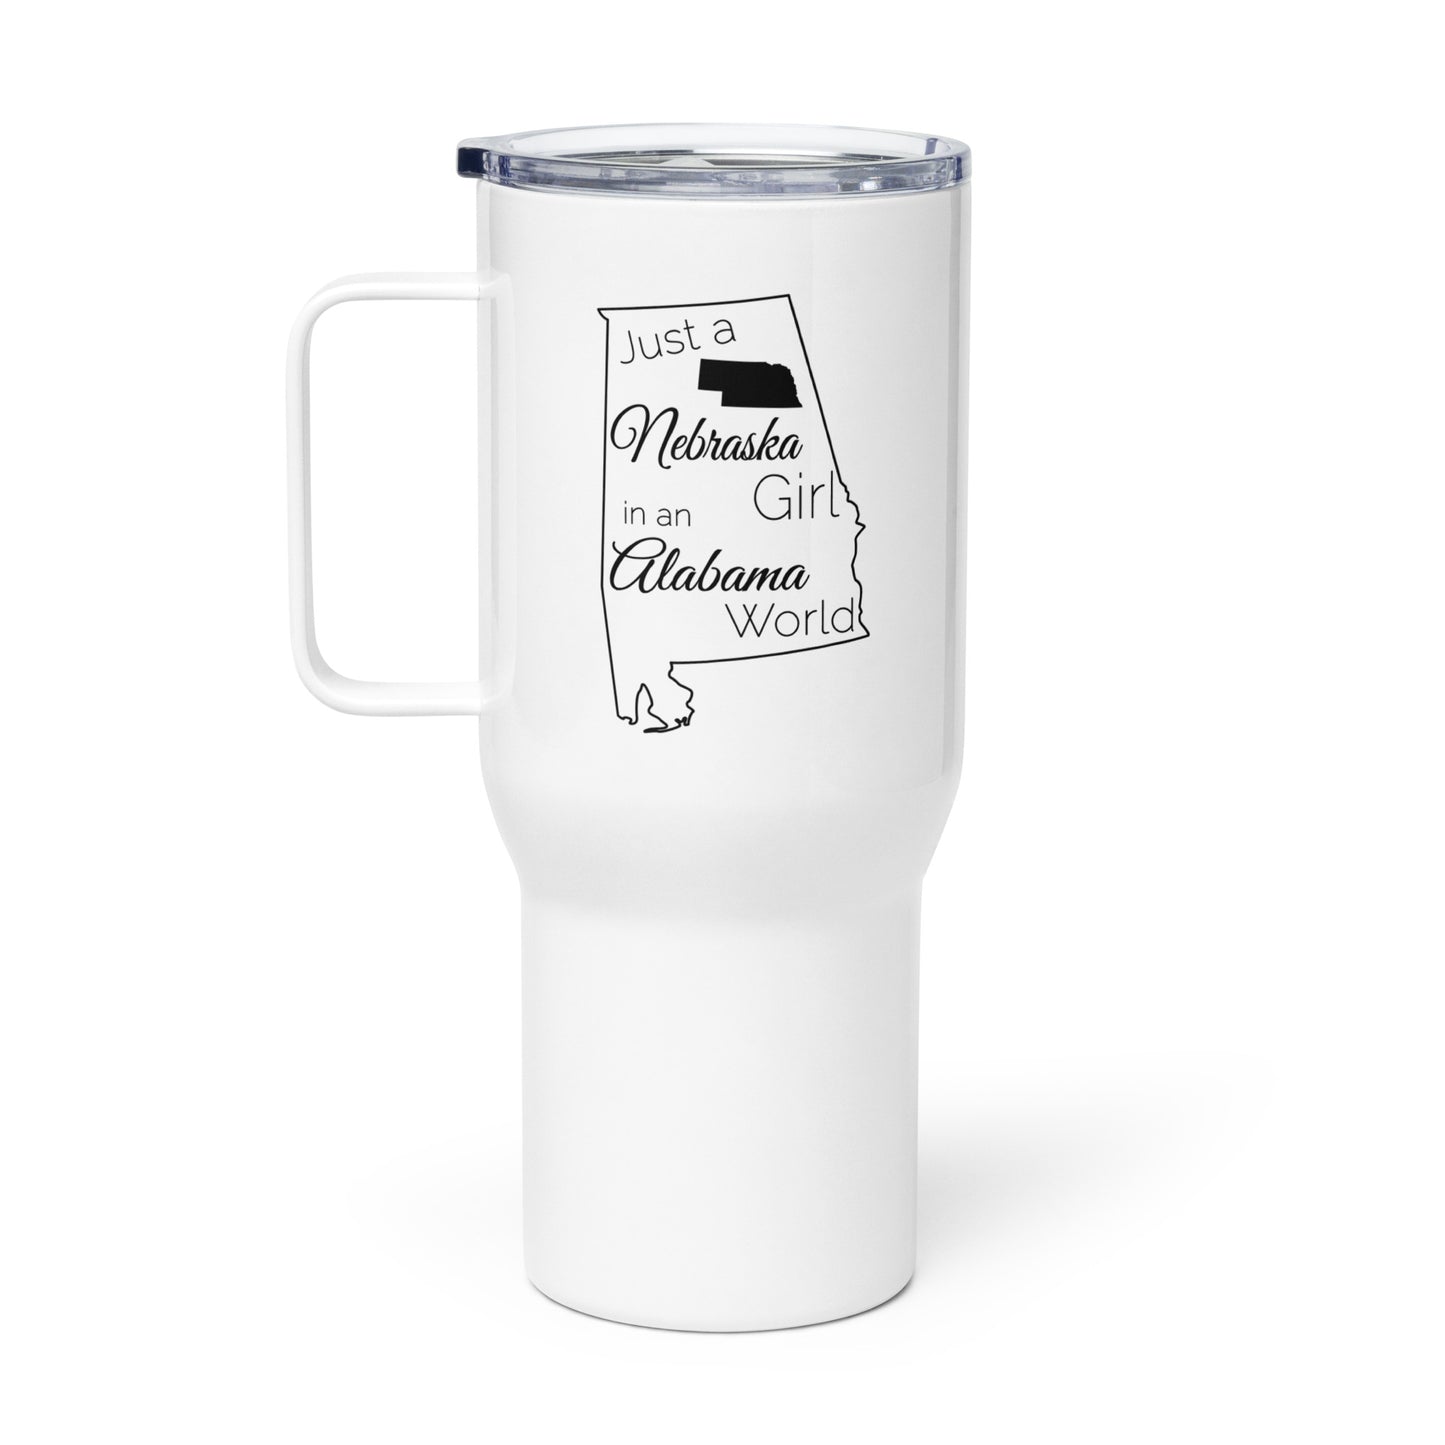 Just a Nebraska Girl in an Alabama World Travel mug with a handle